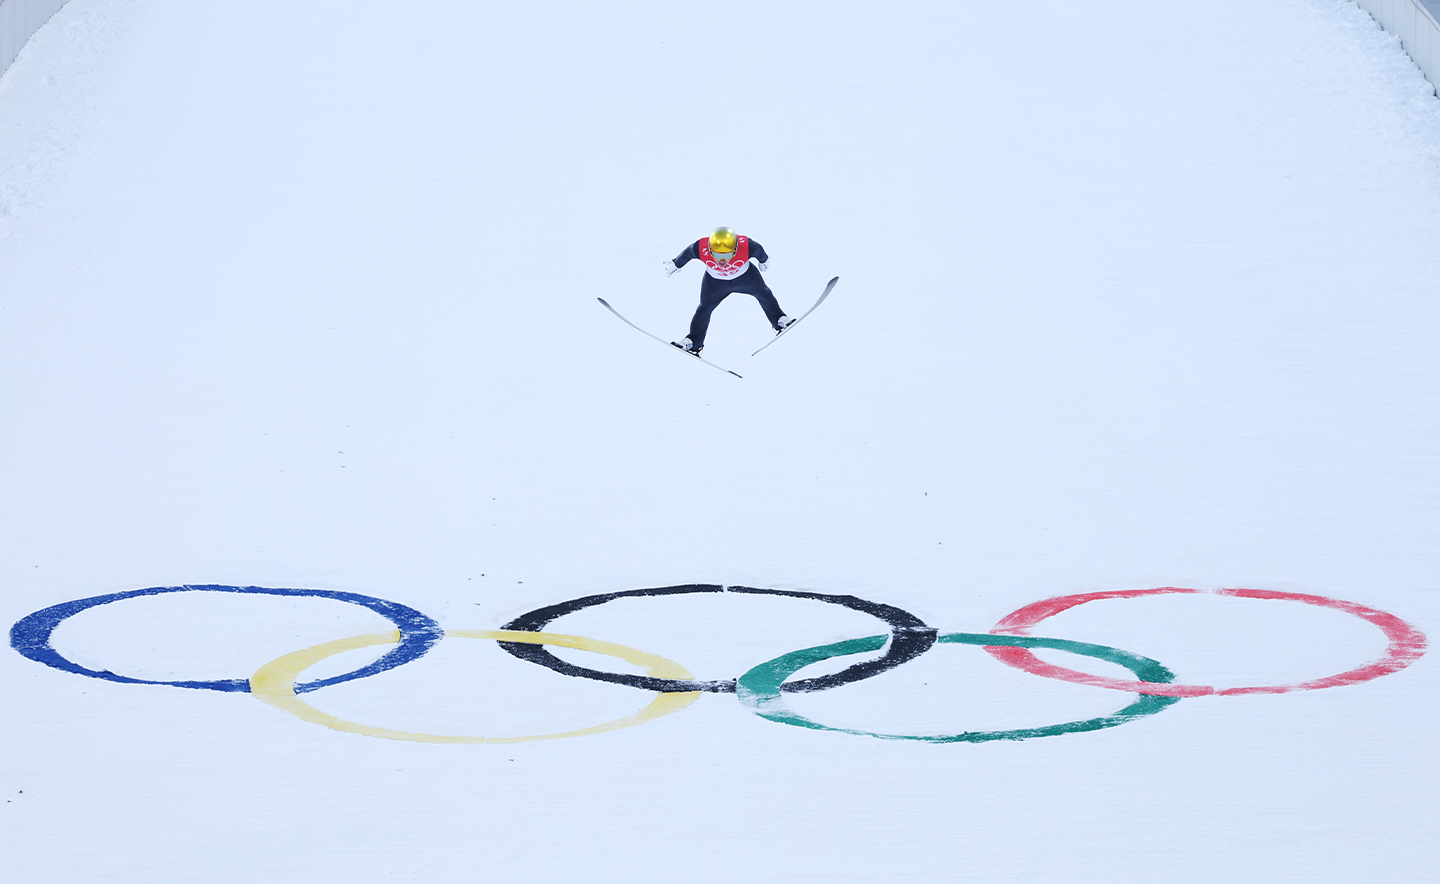 ZHANGJIAKOU, CHINE - 15 FÉVRIER : Manuel Faisst de l'équipe d'Allemagne participe à l'épreuve de saut à ski sur grande colline/10 km lors de la 11e journée des Jeux olympiques d'hiver de Pékin 2022 au Centre national de ski de fond, le 15 février 2022 à Zhangjiakou, en Chine. (Photo par Lars Baron/Getty Images)